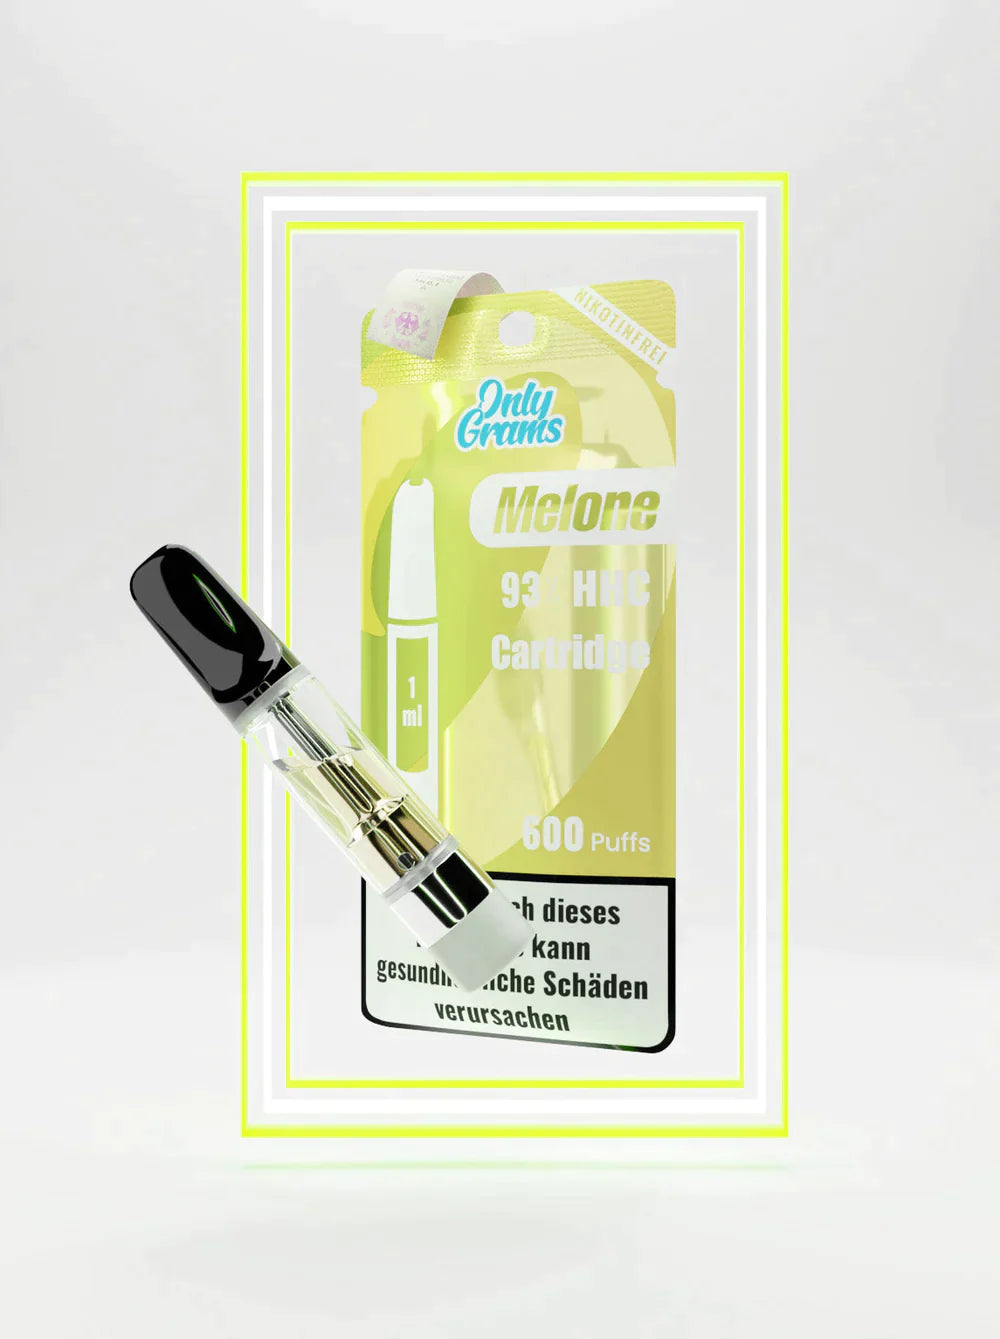 Only Grams HHC Vape Pen Kartusche | MELONE | 93% | 1ml